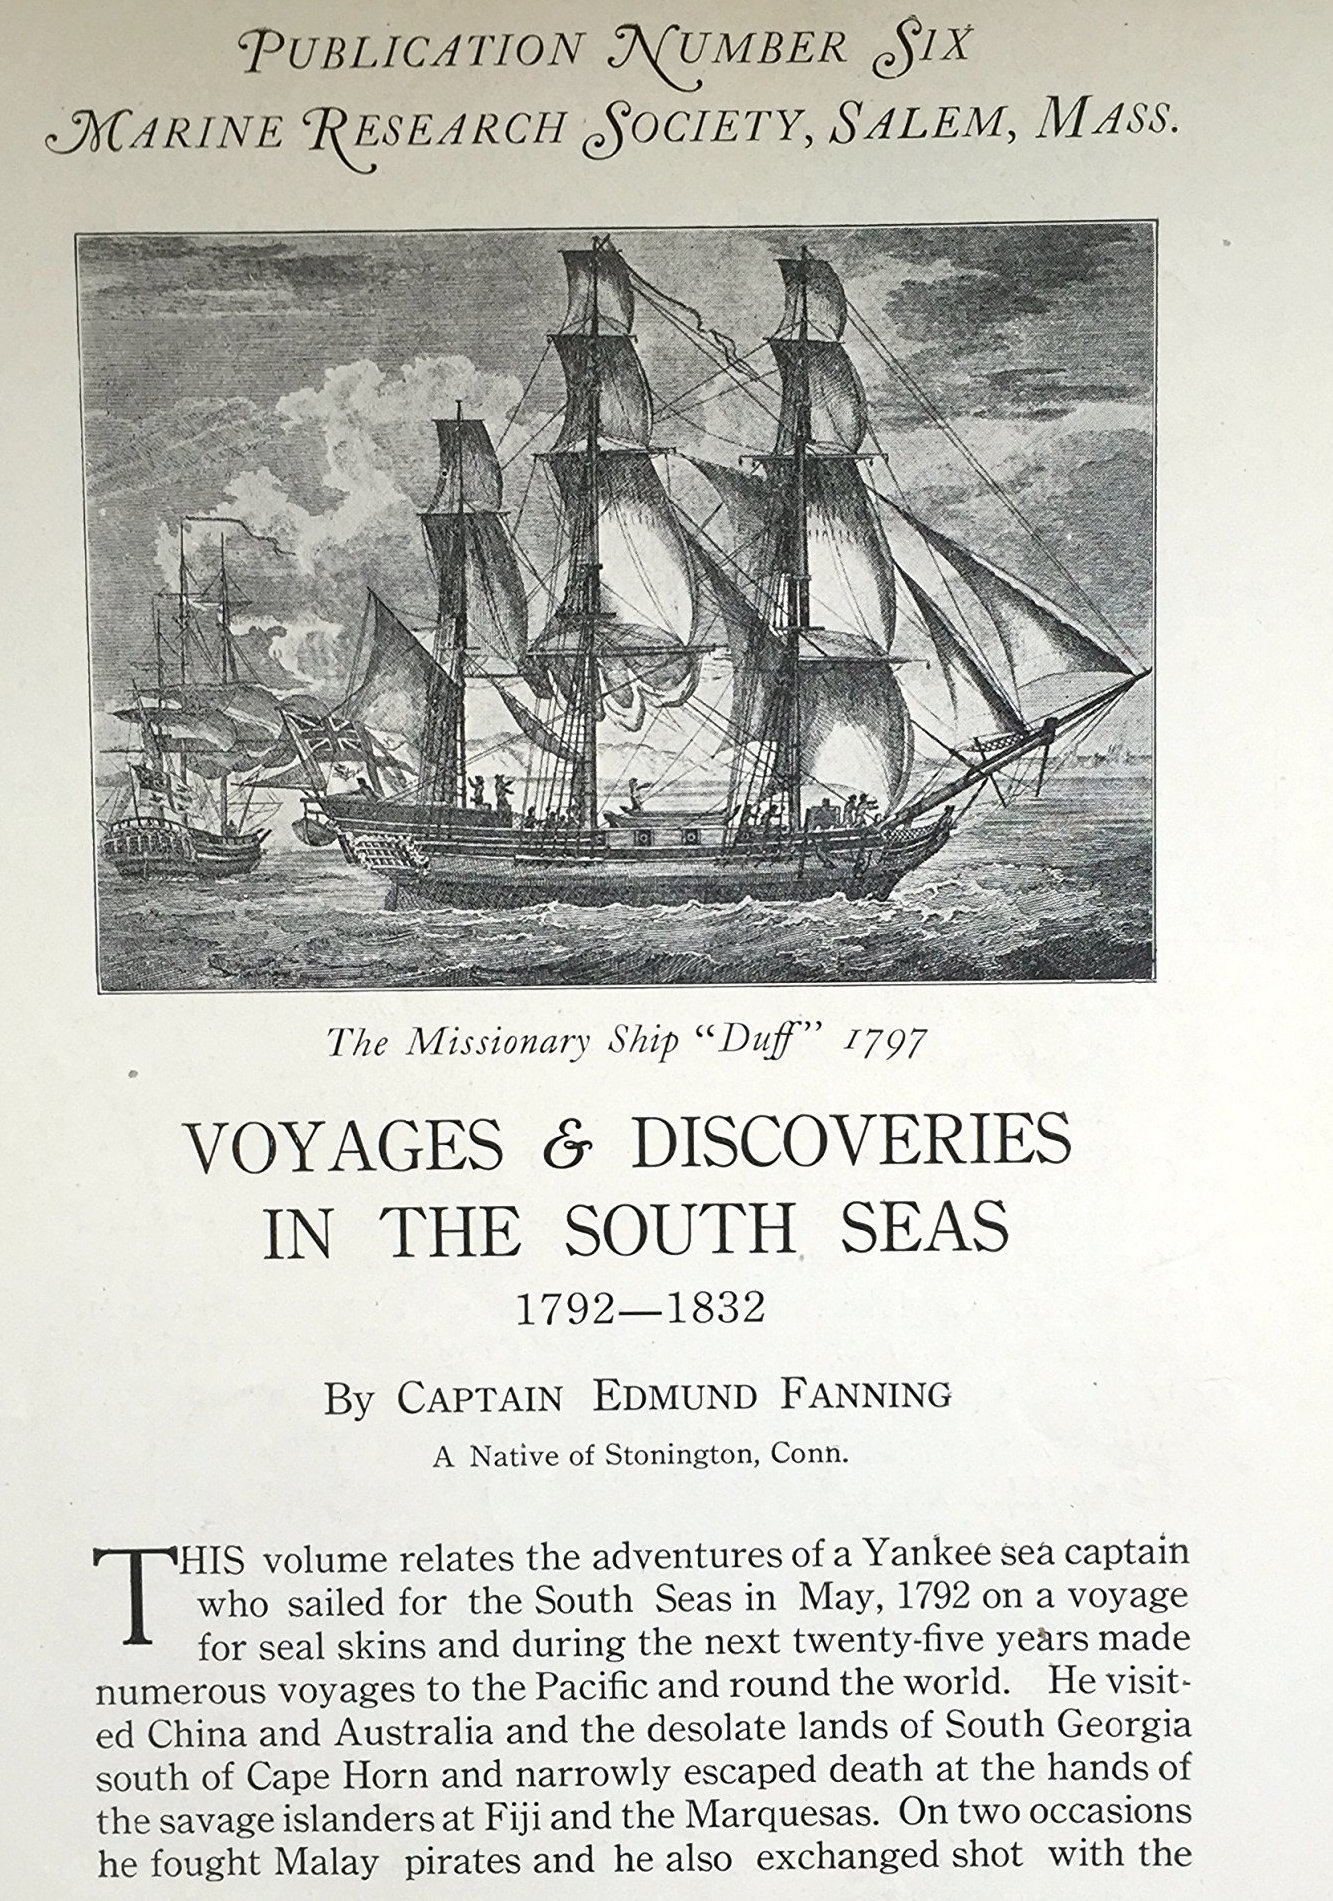 La première page du livre que Fanning consacra à ses aventures dans les Mers du Sud entre 1792 et 1832.